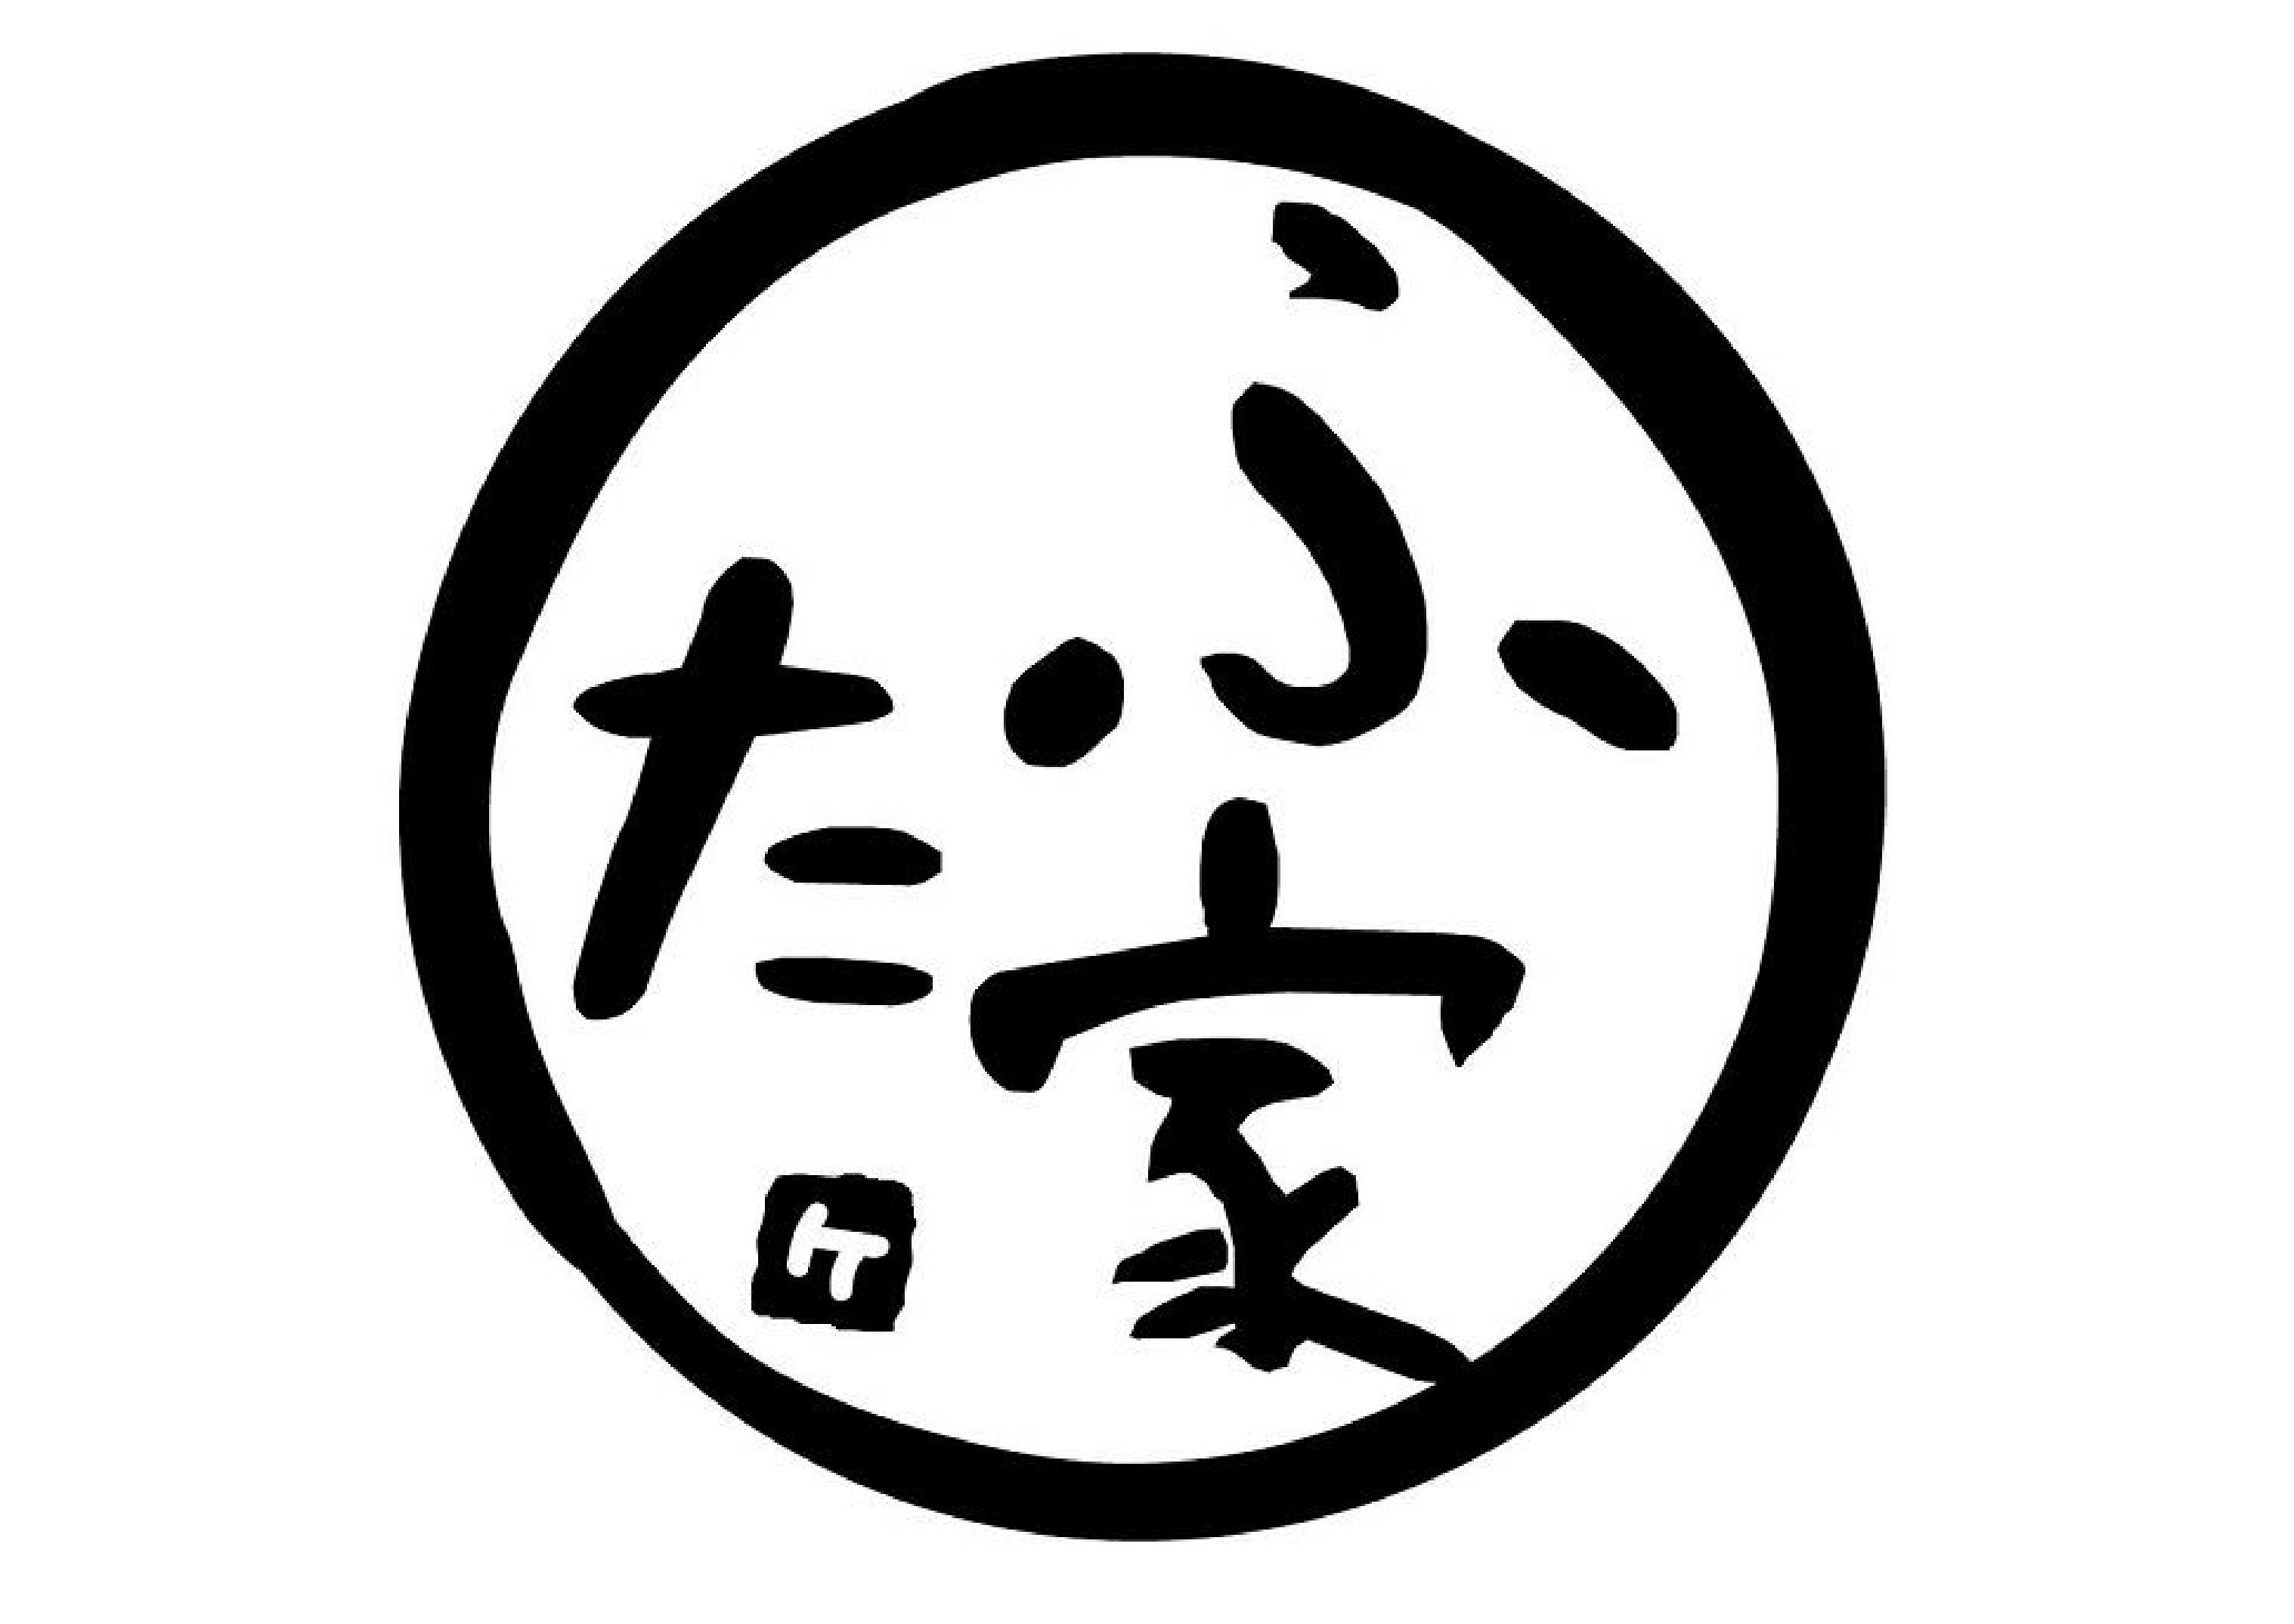 ふた家ロゴ円.jpg